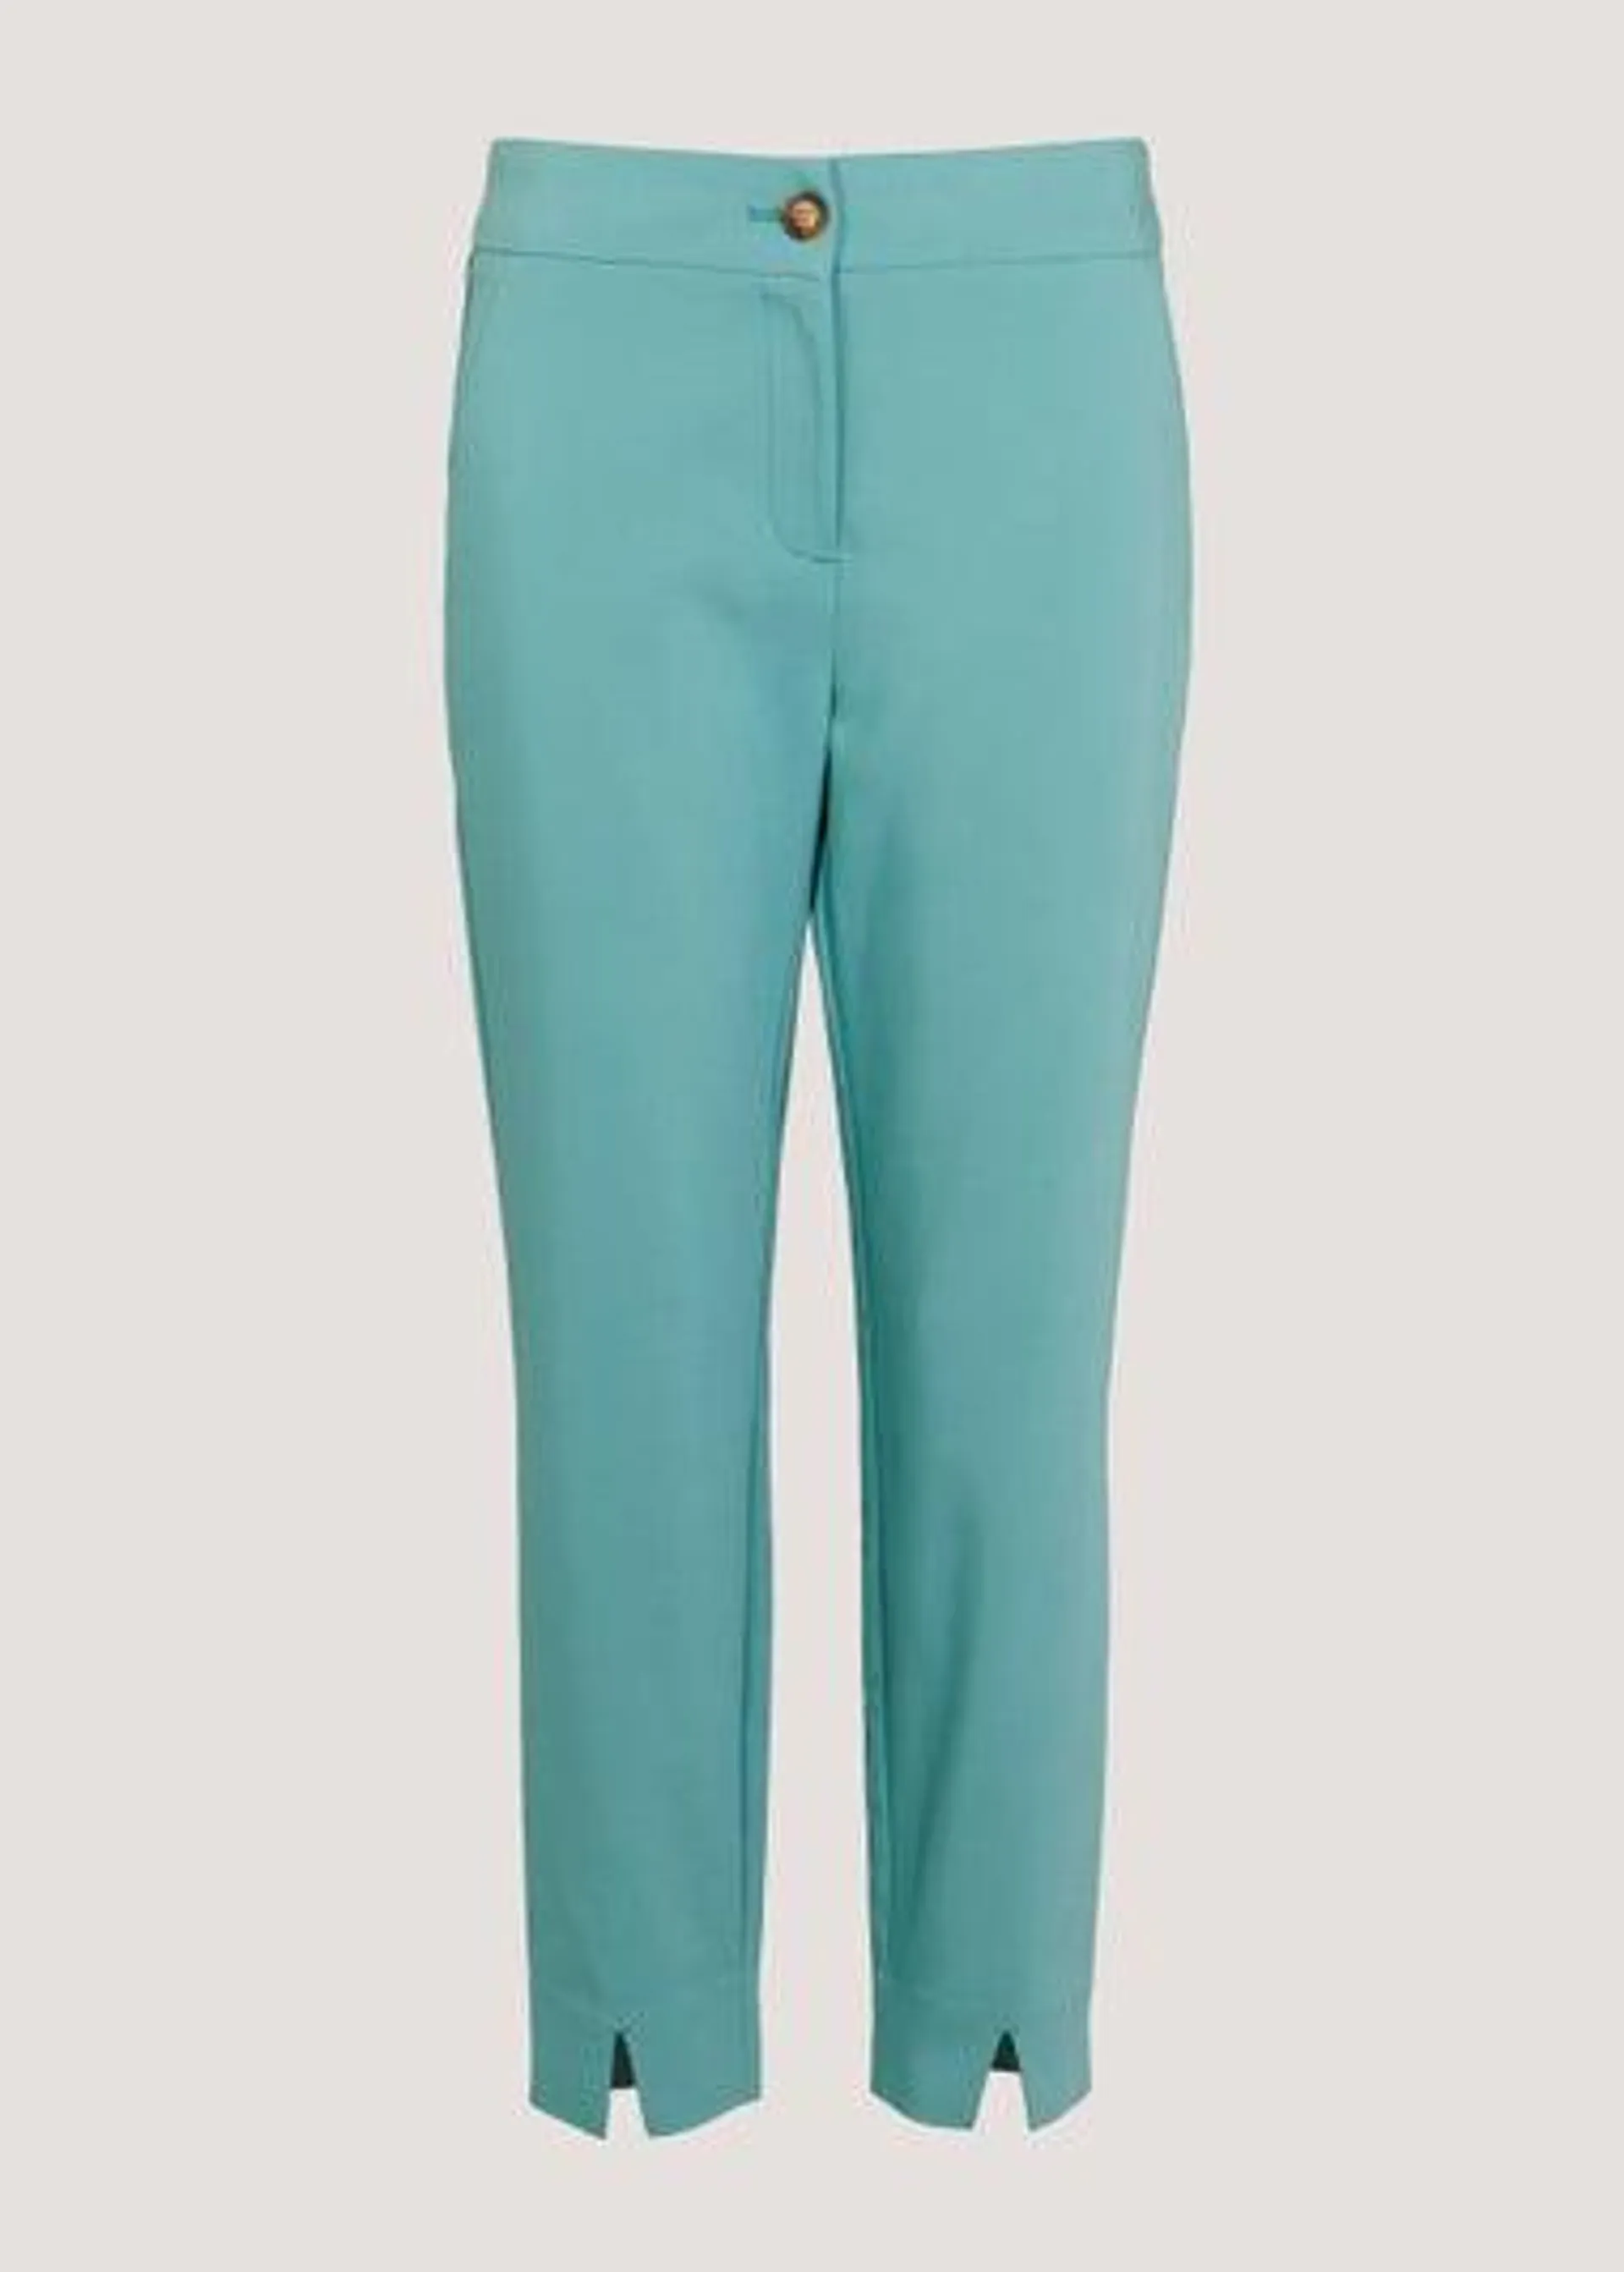 Et Vous Turquoise Capri Trousers - Size 10